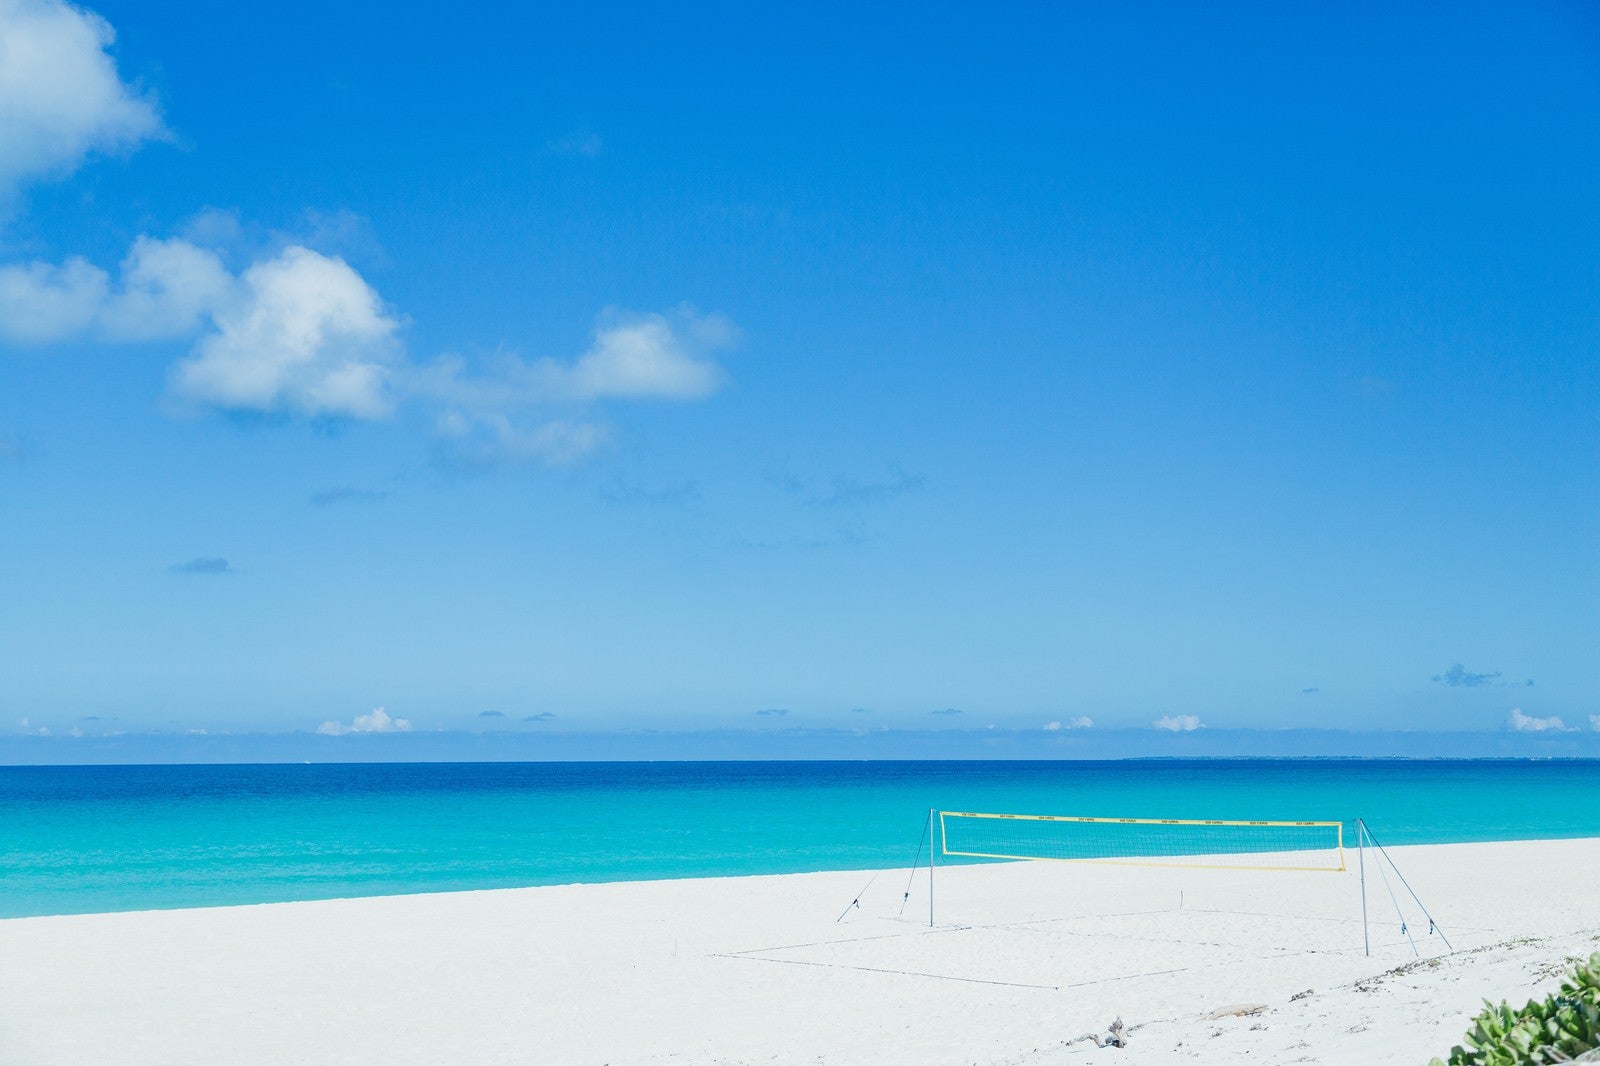 「白い砂浜に用意されたビーチバレーネット」の写真